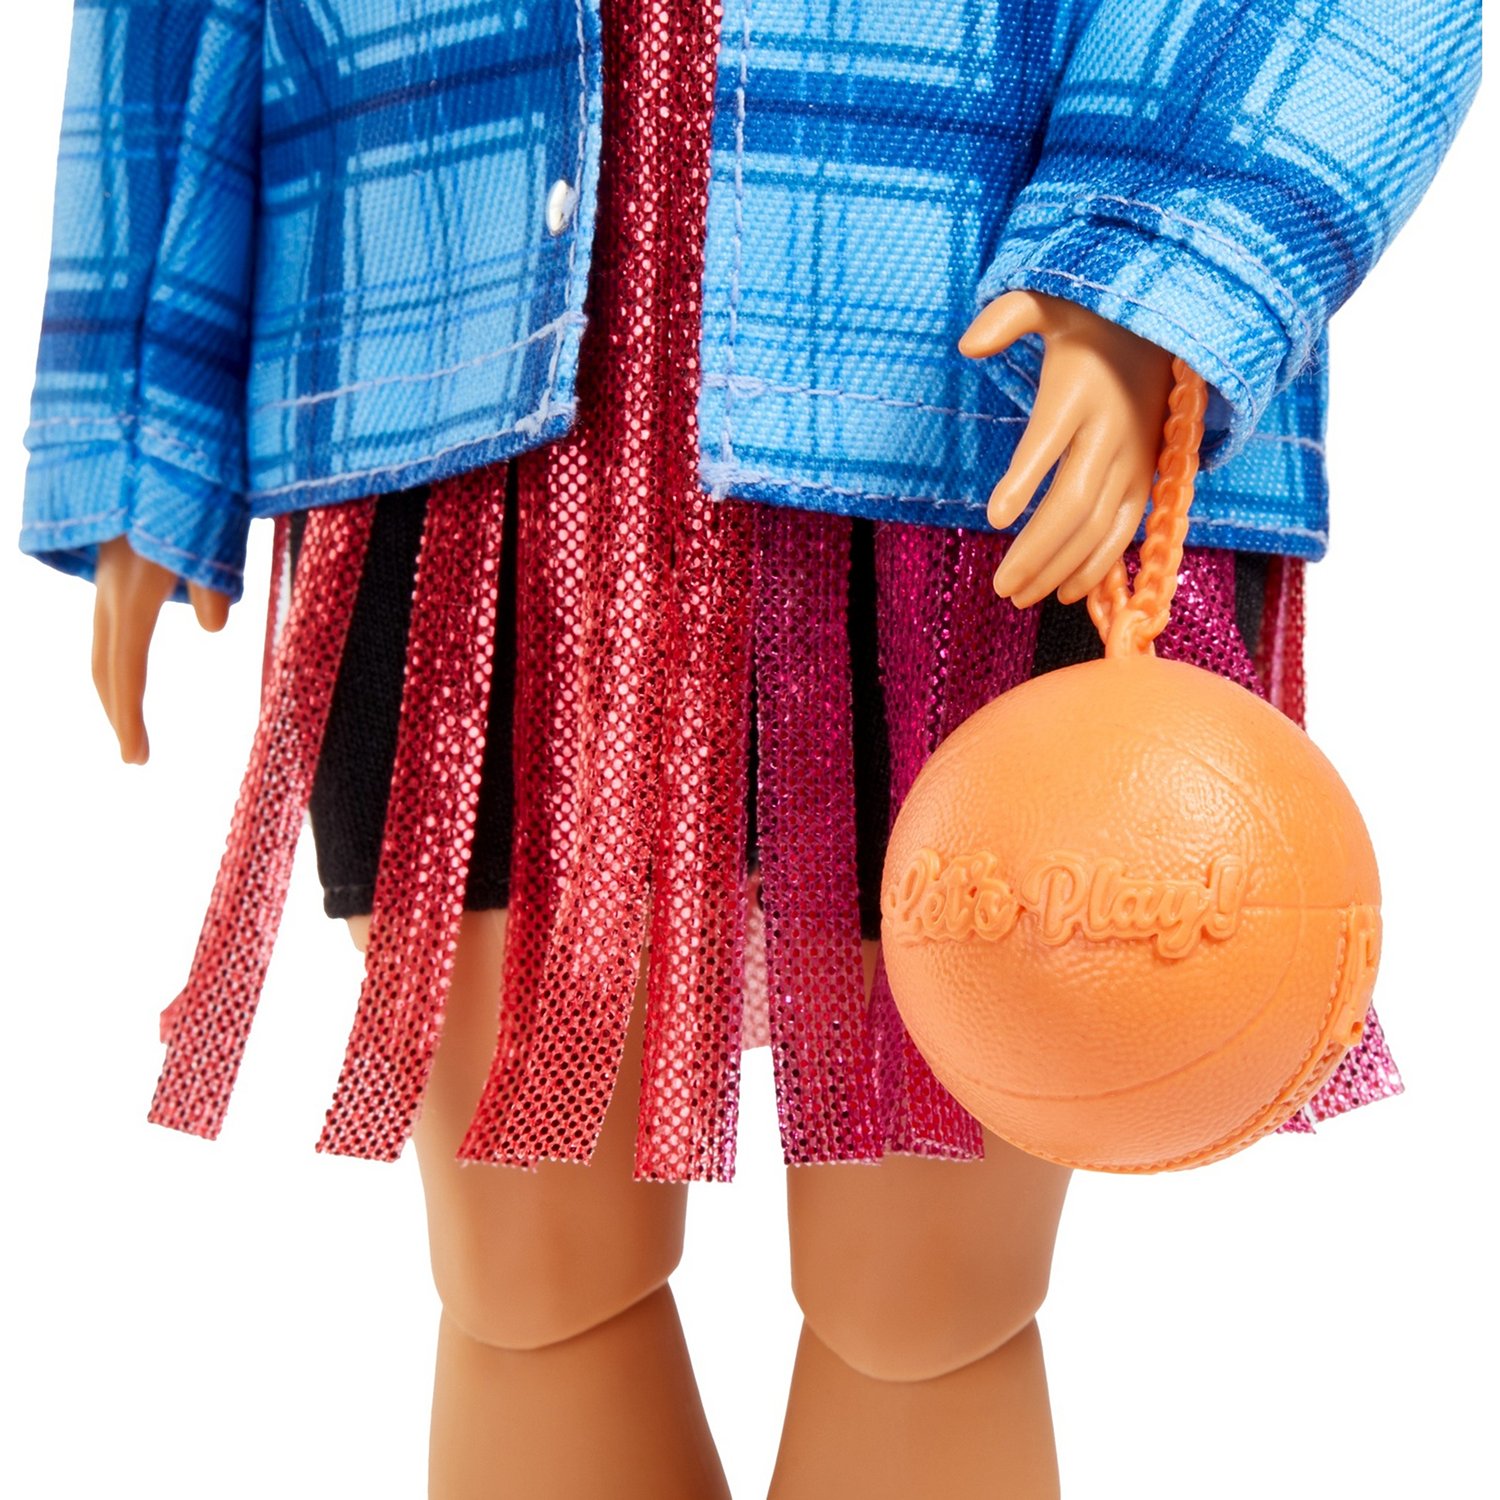 Кукла Barbie HDJ46 Экстра в платье баскетбольный стиль